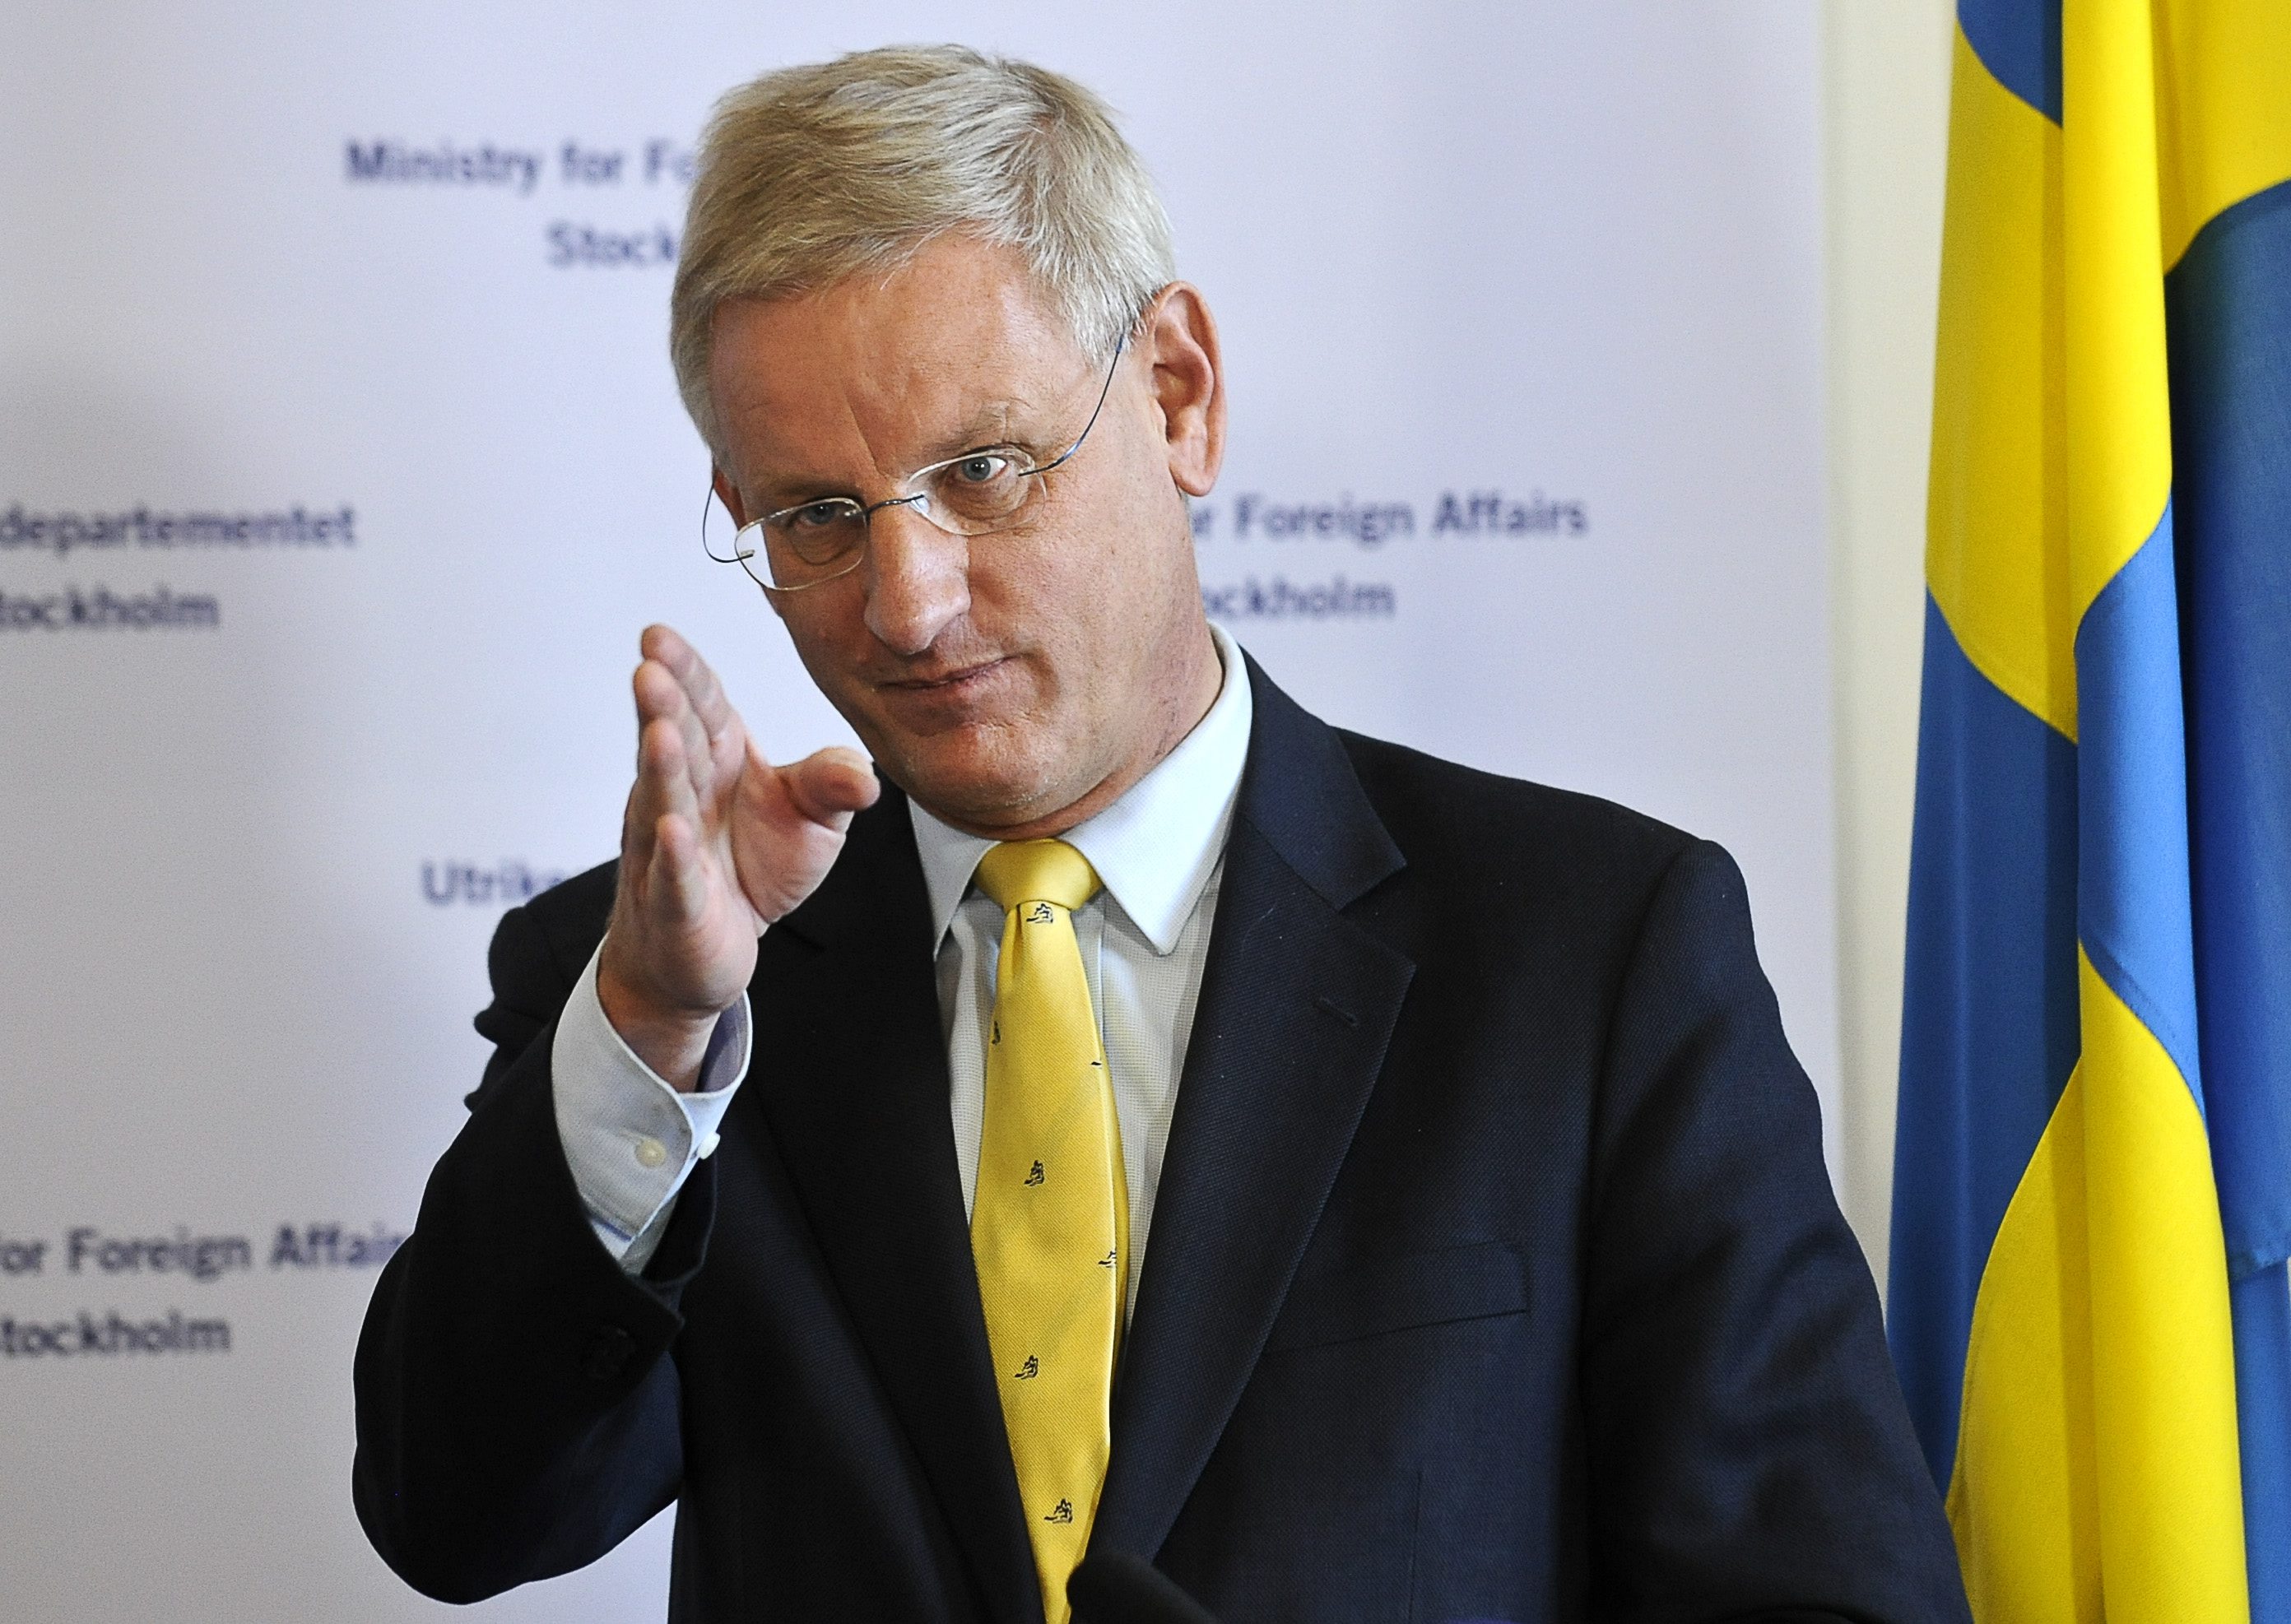  Carl Bildt (m) undrade om detta gällde alla gränser, även Baltikum och Finland. Och ja, det stämmer. Alla gränser.